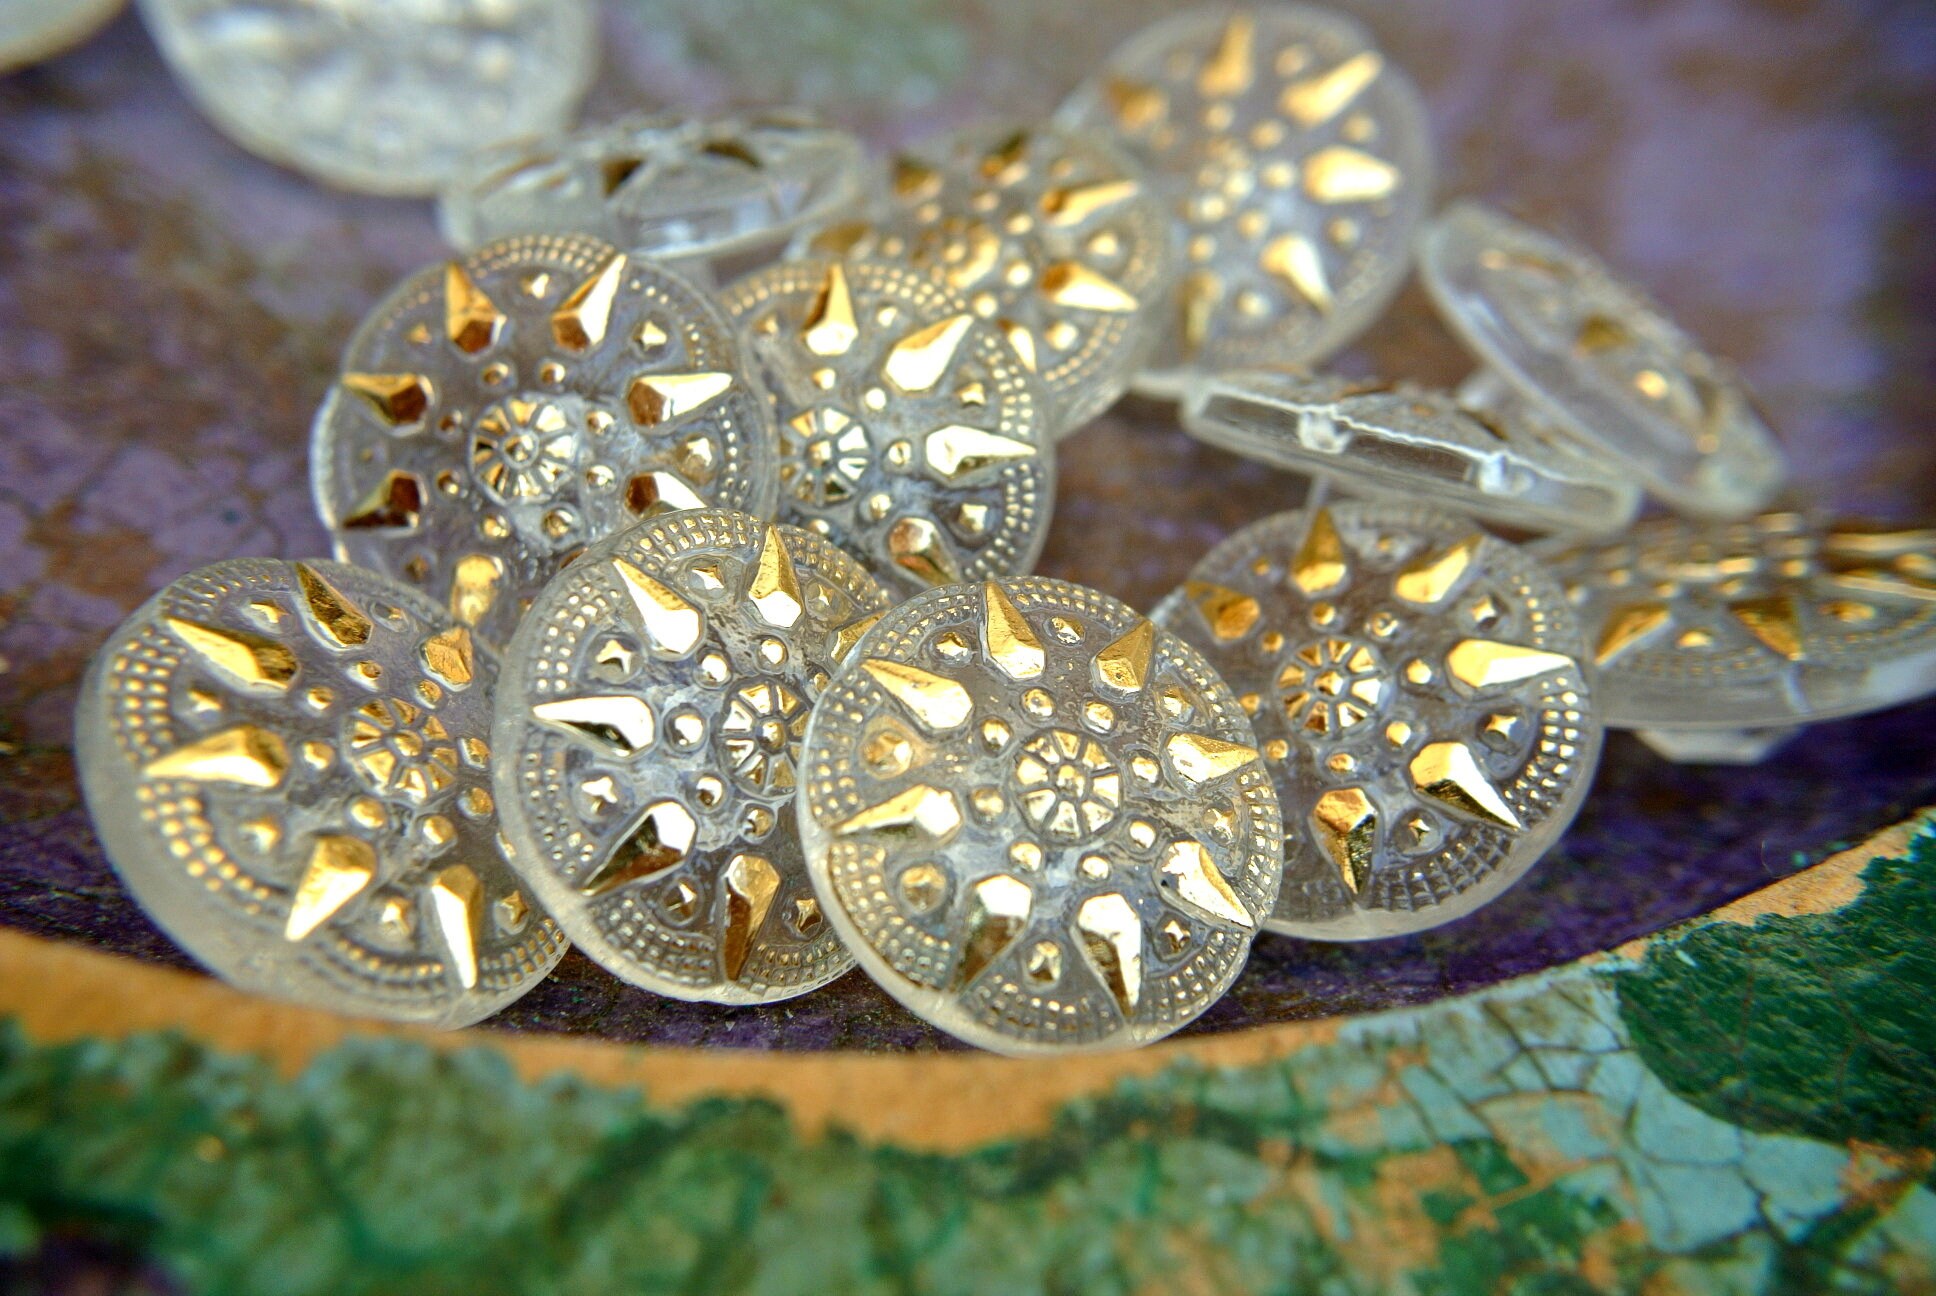 Botones, 60 botones de flores vintage con ribete grabado en oro